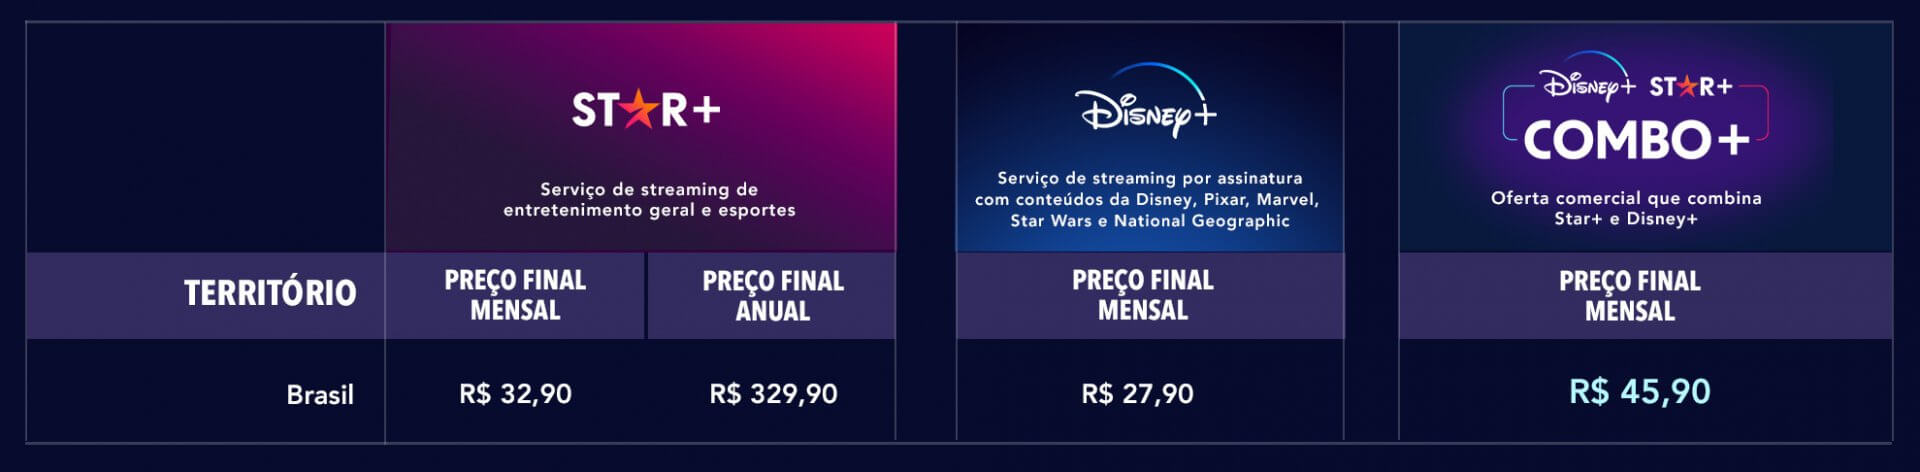 Os preços do Disney+ e do Star+ no Brasil (Crédito: divulgação / Disney)